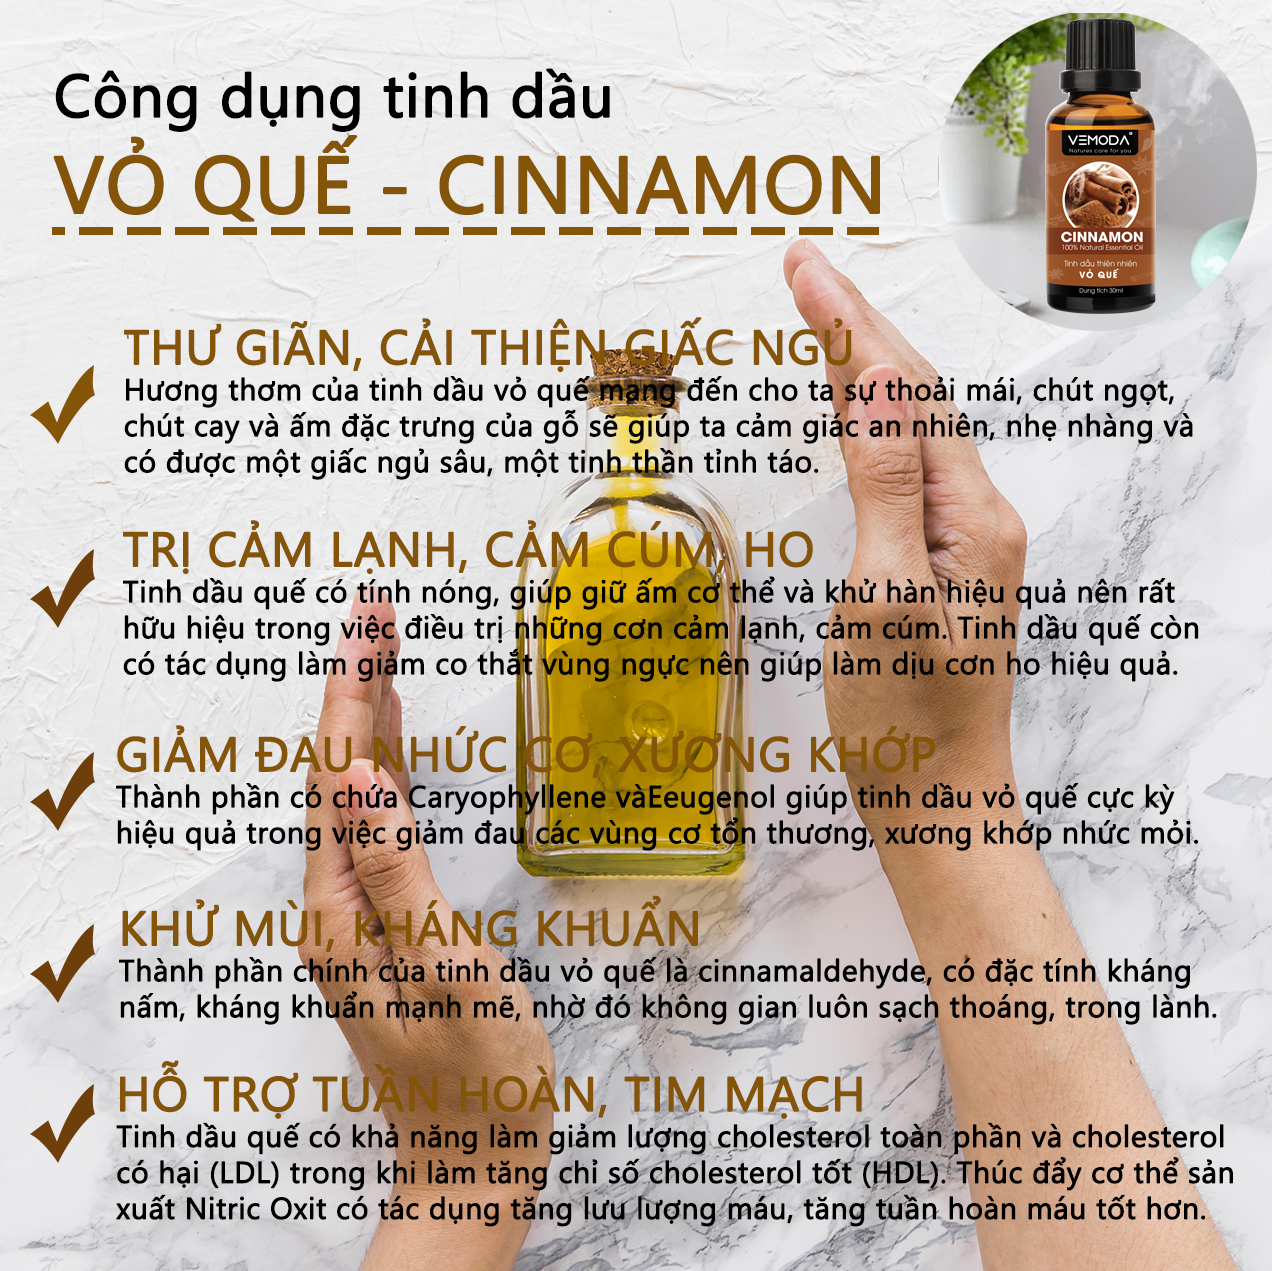 Tinh dầu Vỏ quế cao cấp 50ML Cinnamon. Tinh dầu xông phòng Vemoda giúp khử mùi, thư giãn, cải thiện giấc ngủ, trị cảm lạnh, giảm đau nhức, giảm mỡ bụng hiệu quả